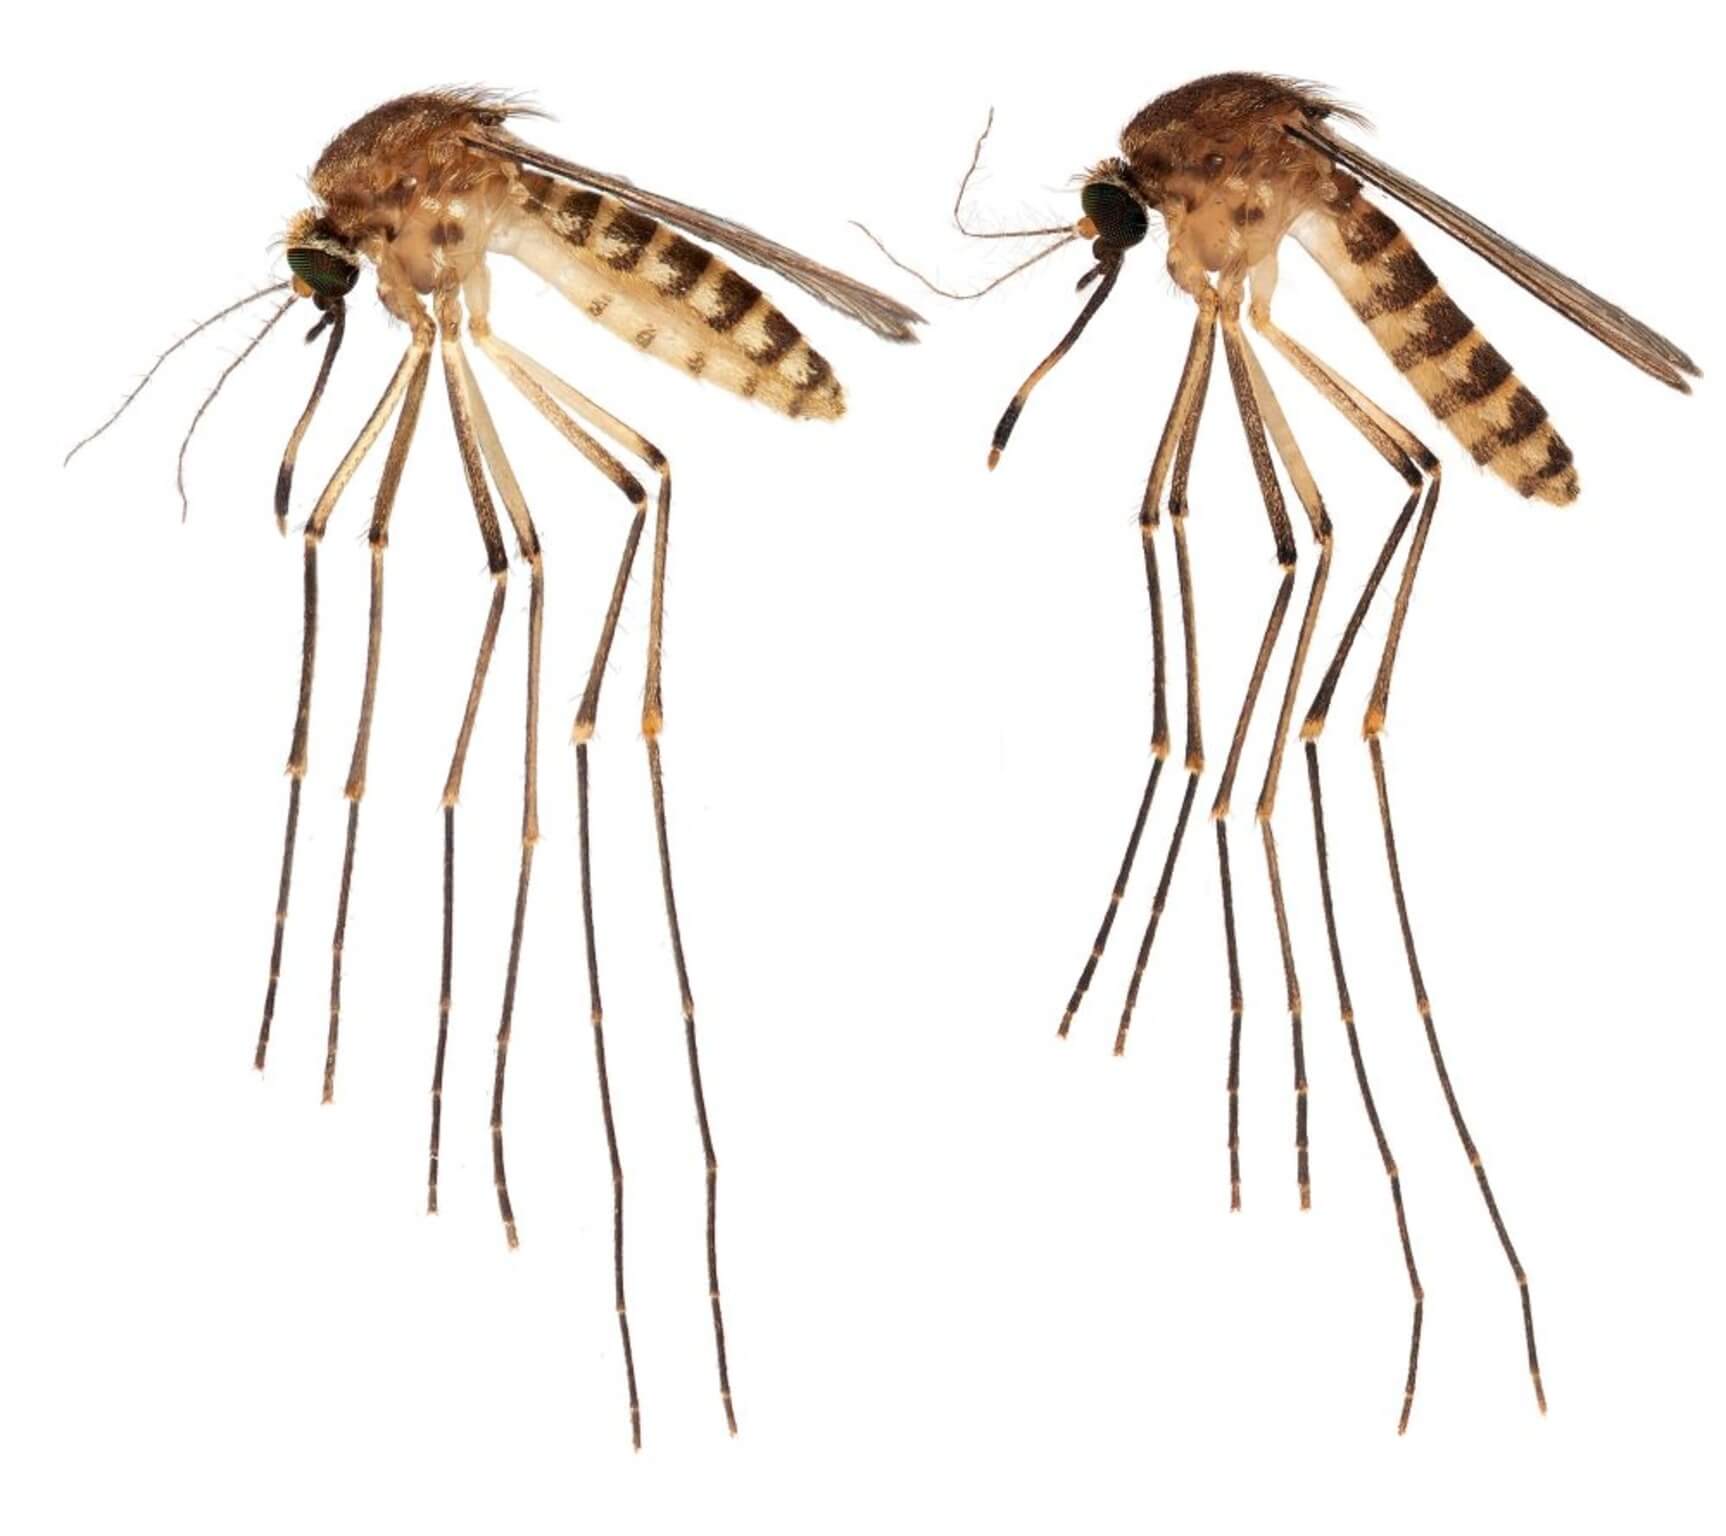 Culex lactator mosquito found in Florida